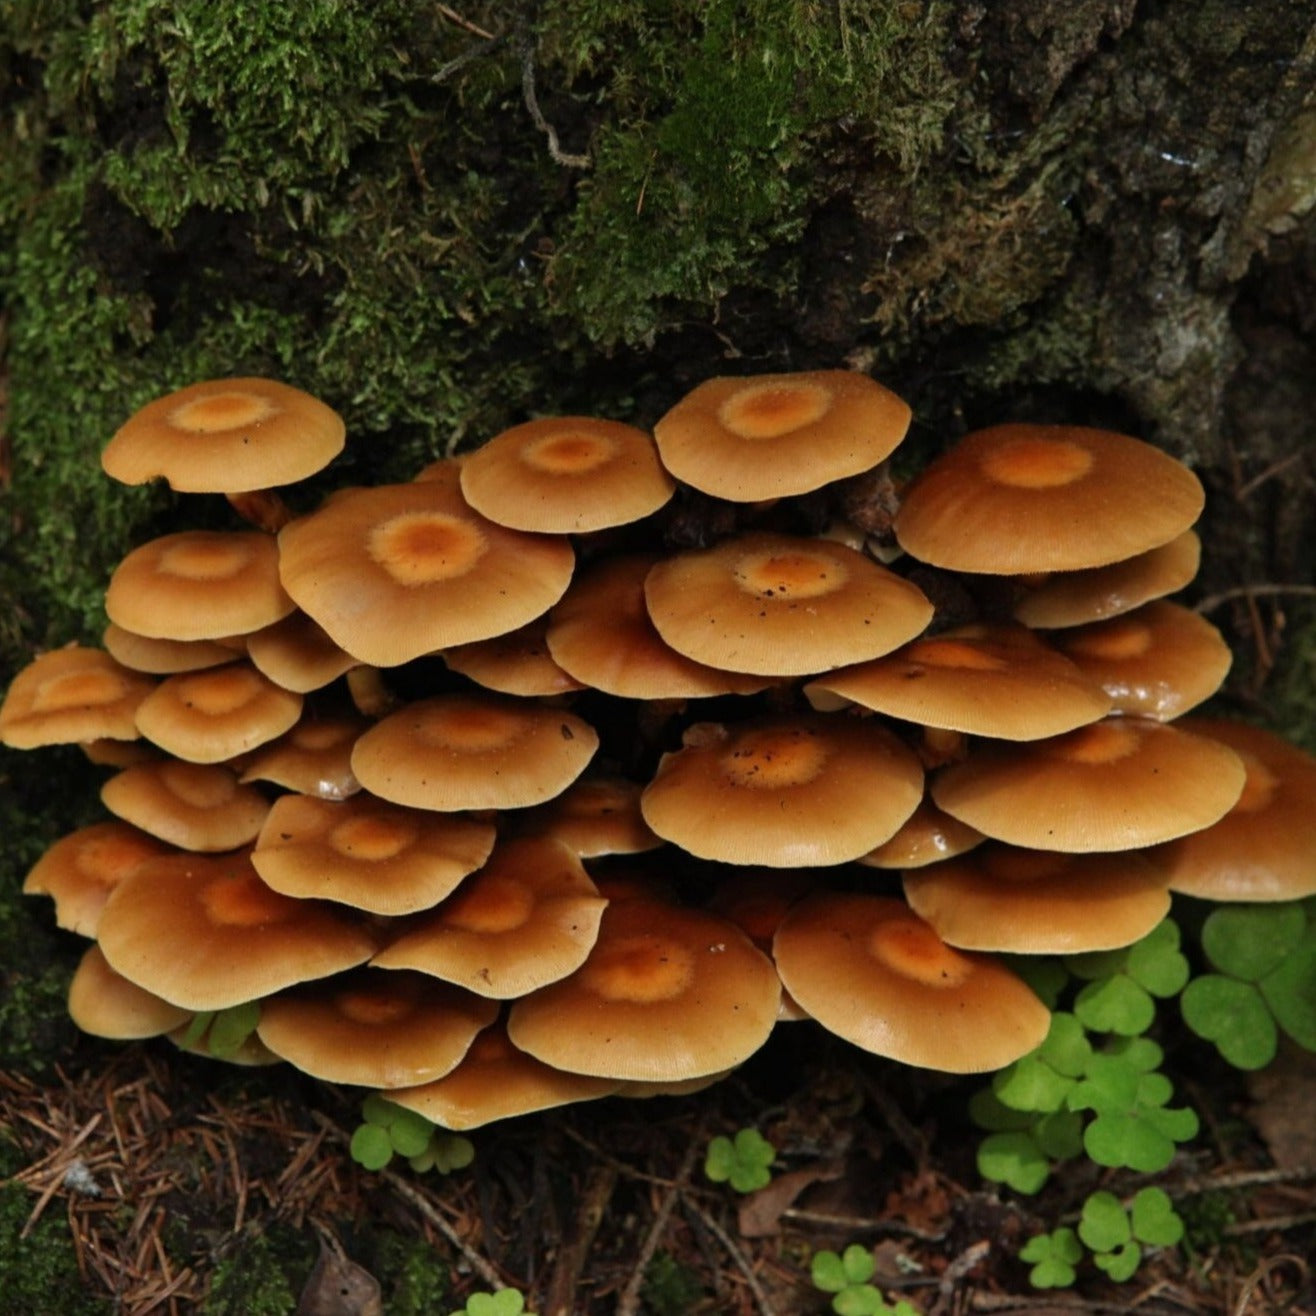 Woodtuft Mushroom Kuehneromyces mutabilis